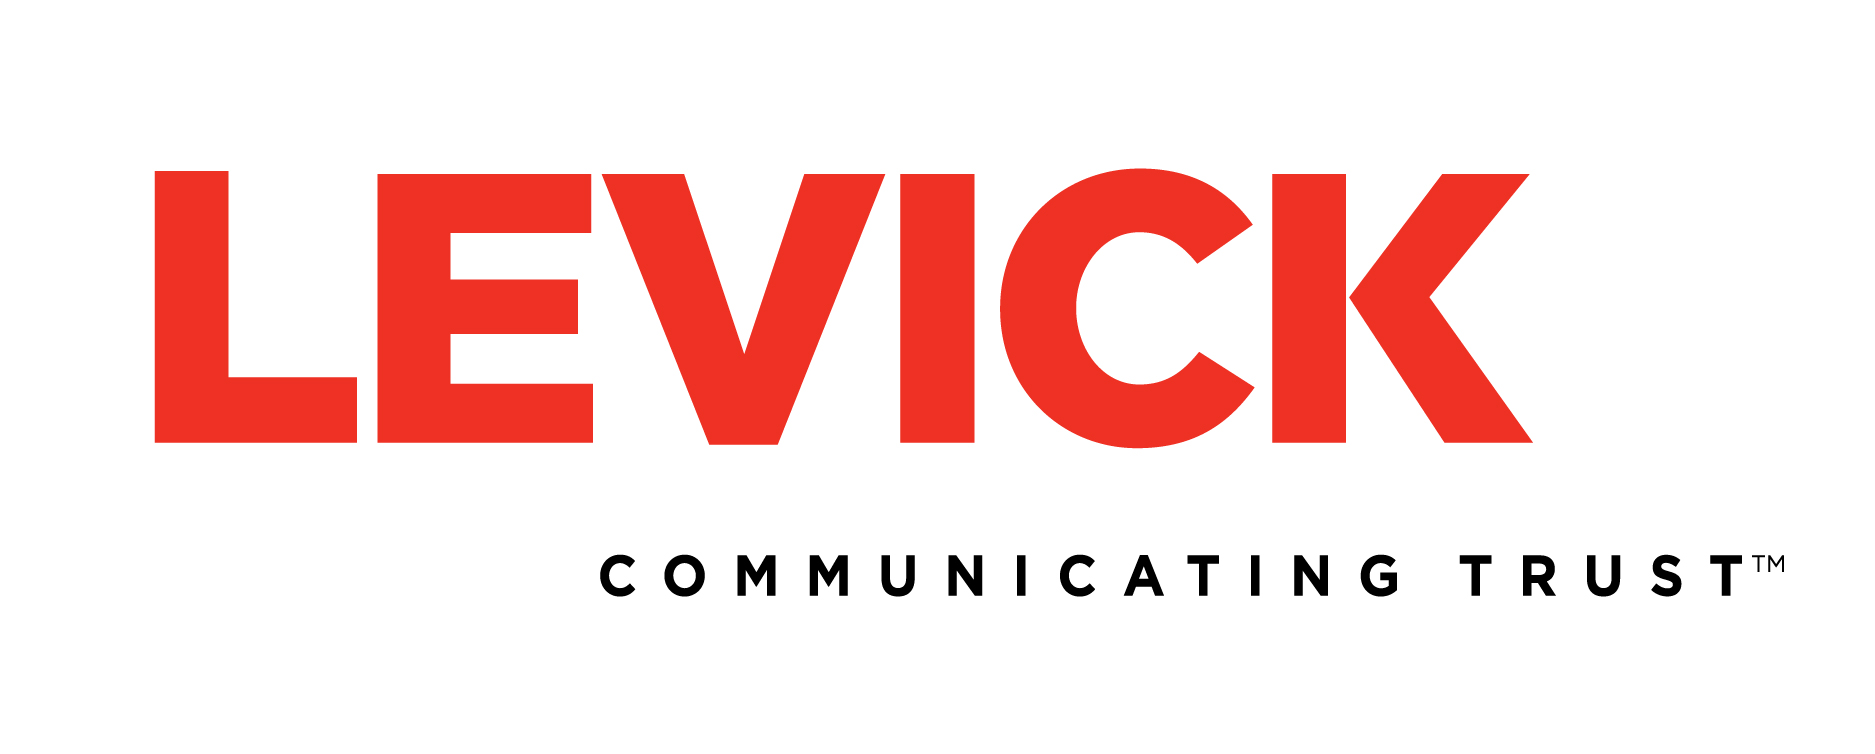  Best Sports PR Company Logo: Levick